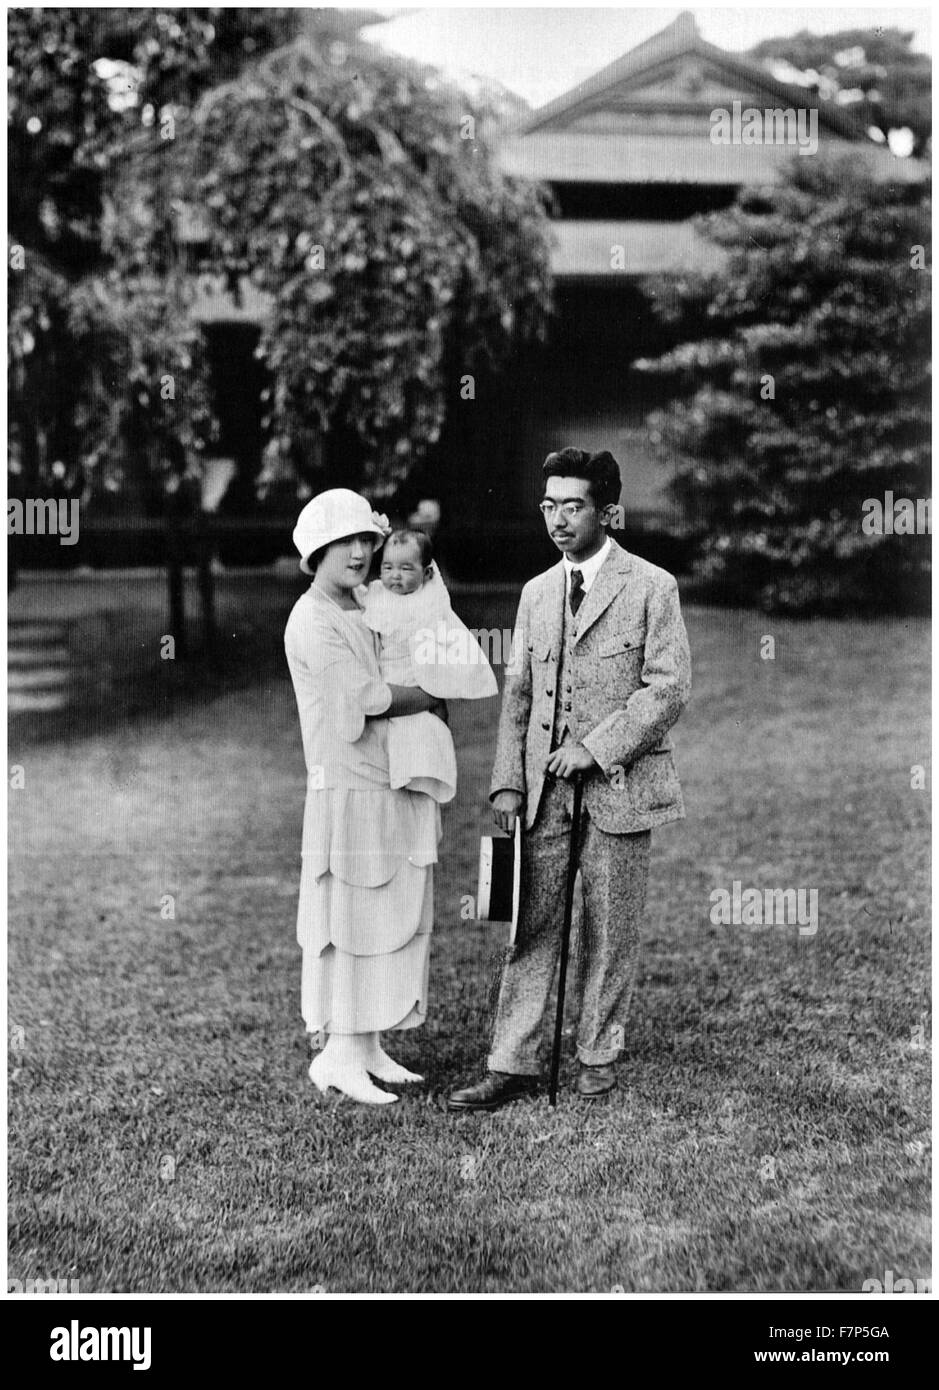 Foto von Kaiser Sh? wa (1901-1989) Kaiser von Japan, auch bekannt als Hirohito, Kaiserin K? jun und ihre Tochter Shigeko Higashikuni (1925-1961). Datiert 1925 Stockfoto